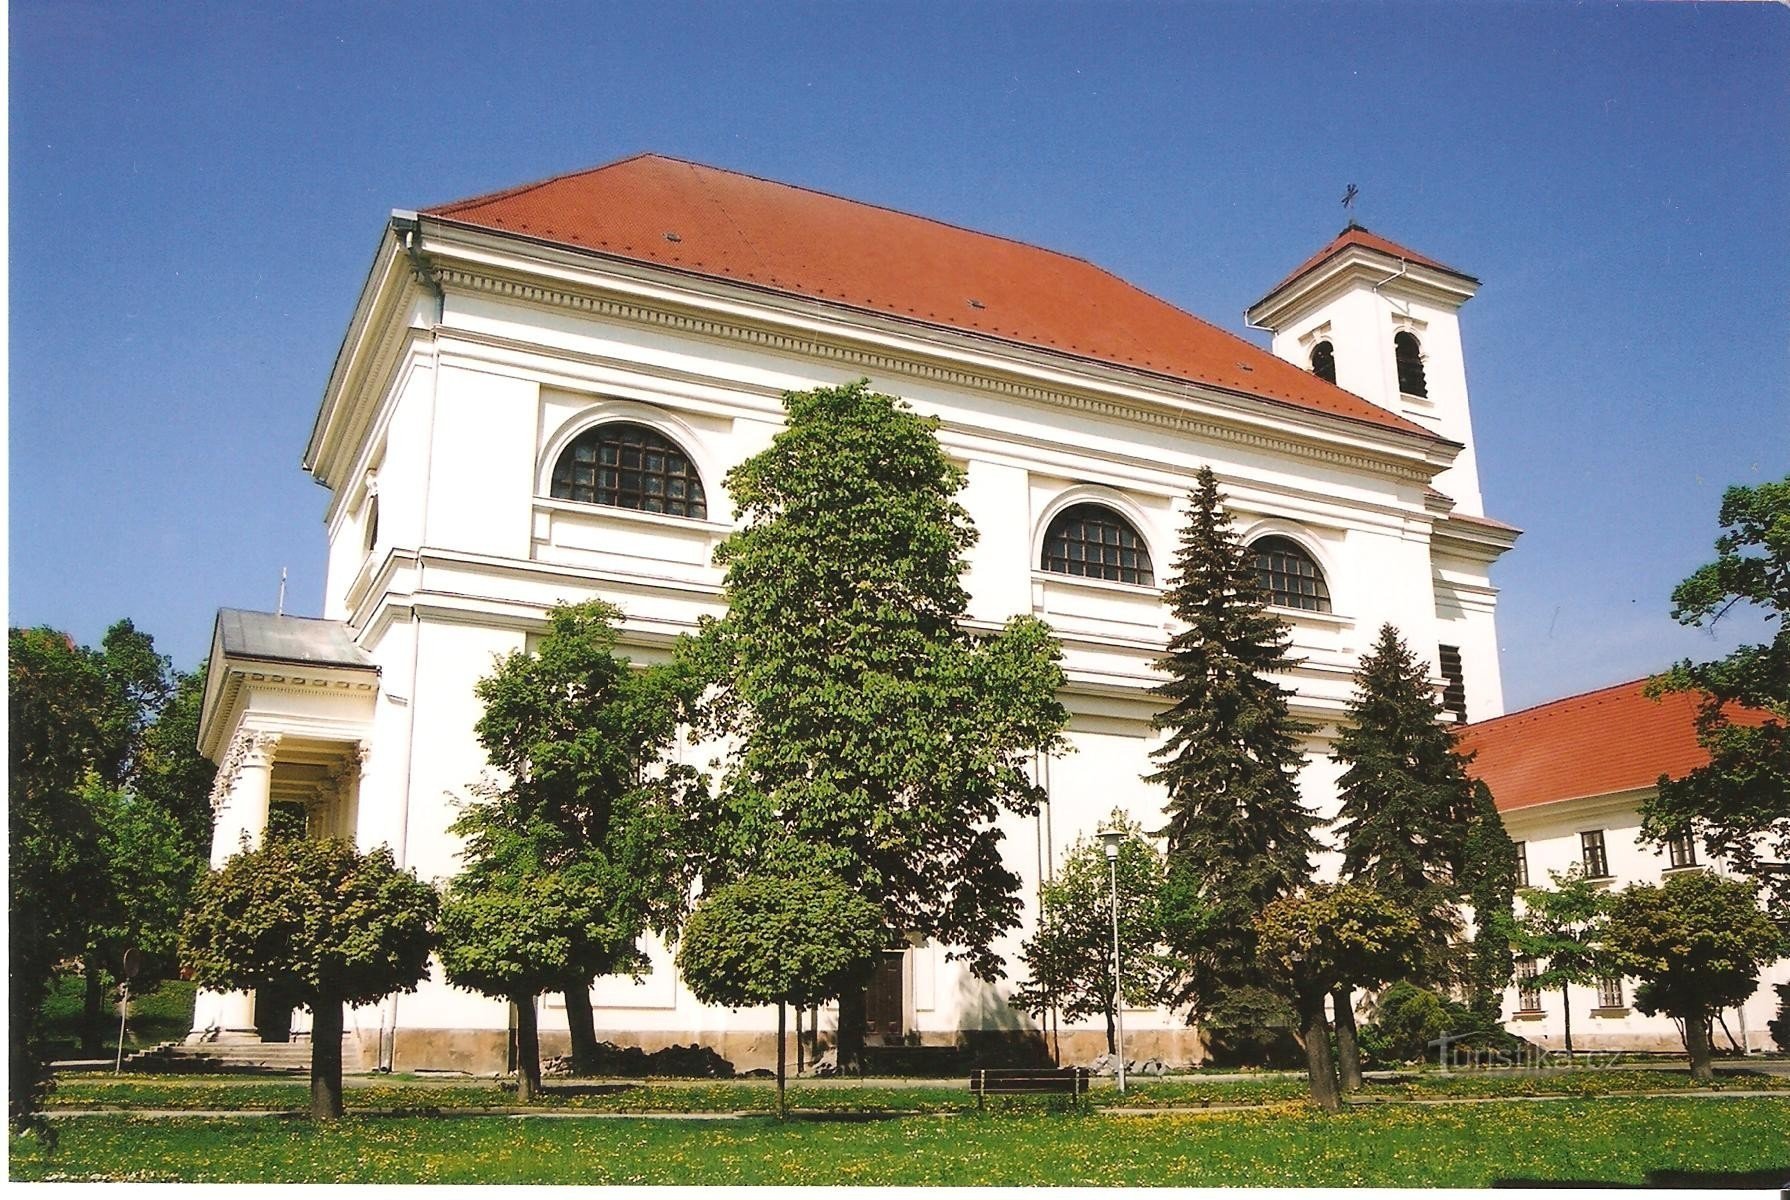 Slavkov - crkva